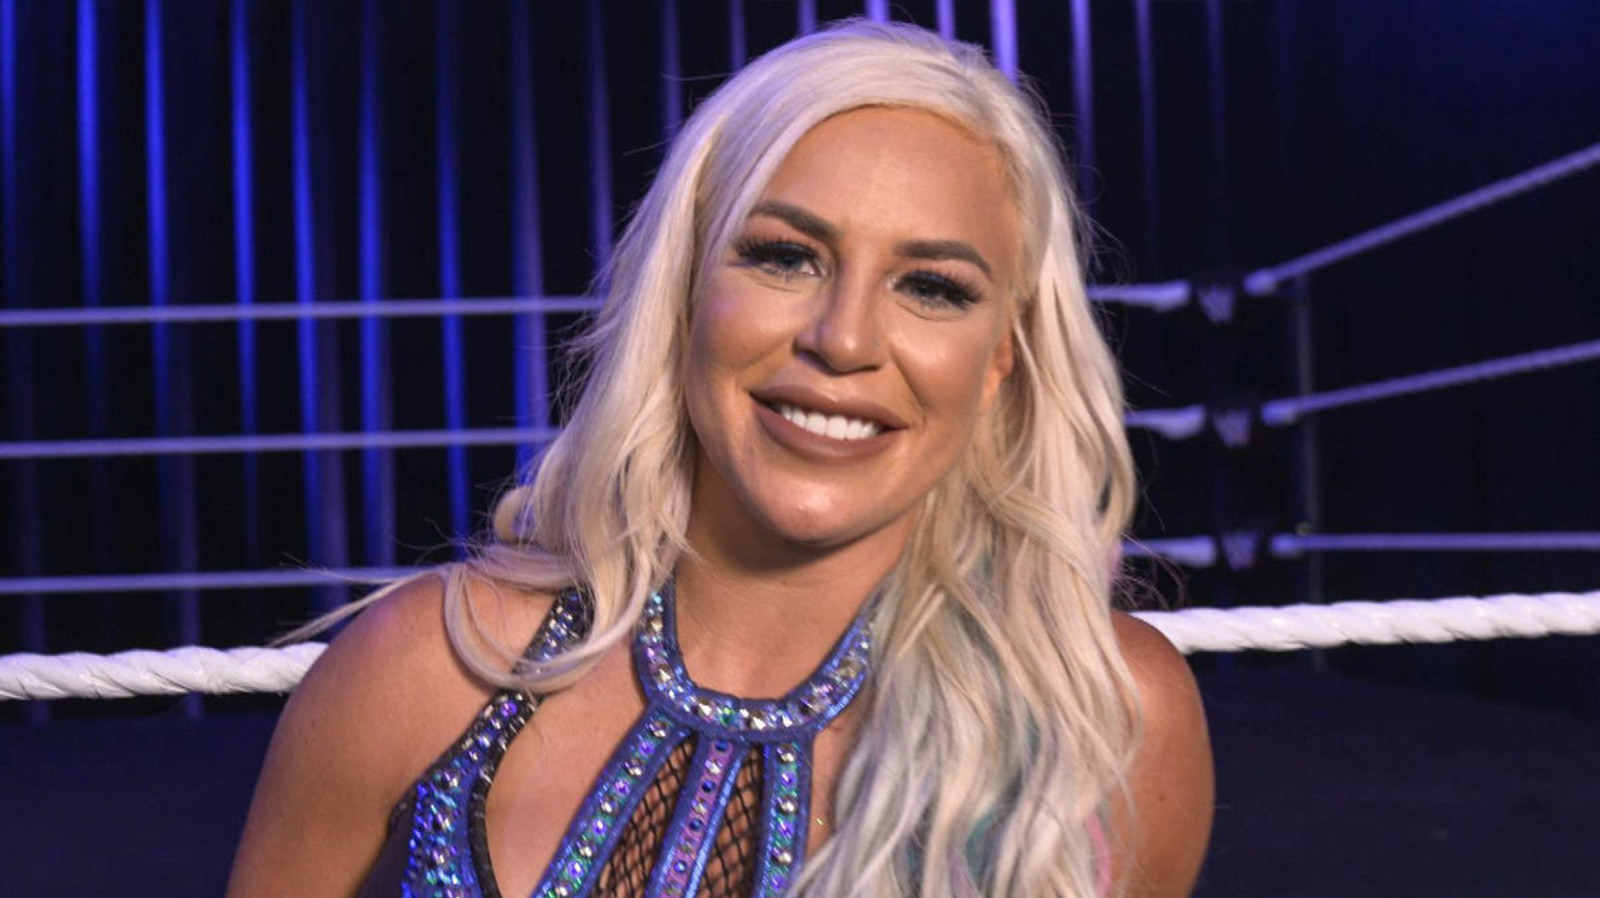 La ex Dana Brooke explica cómo se siente "libertad" tras el lanzamiento de la WWE